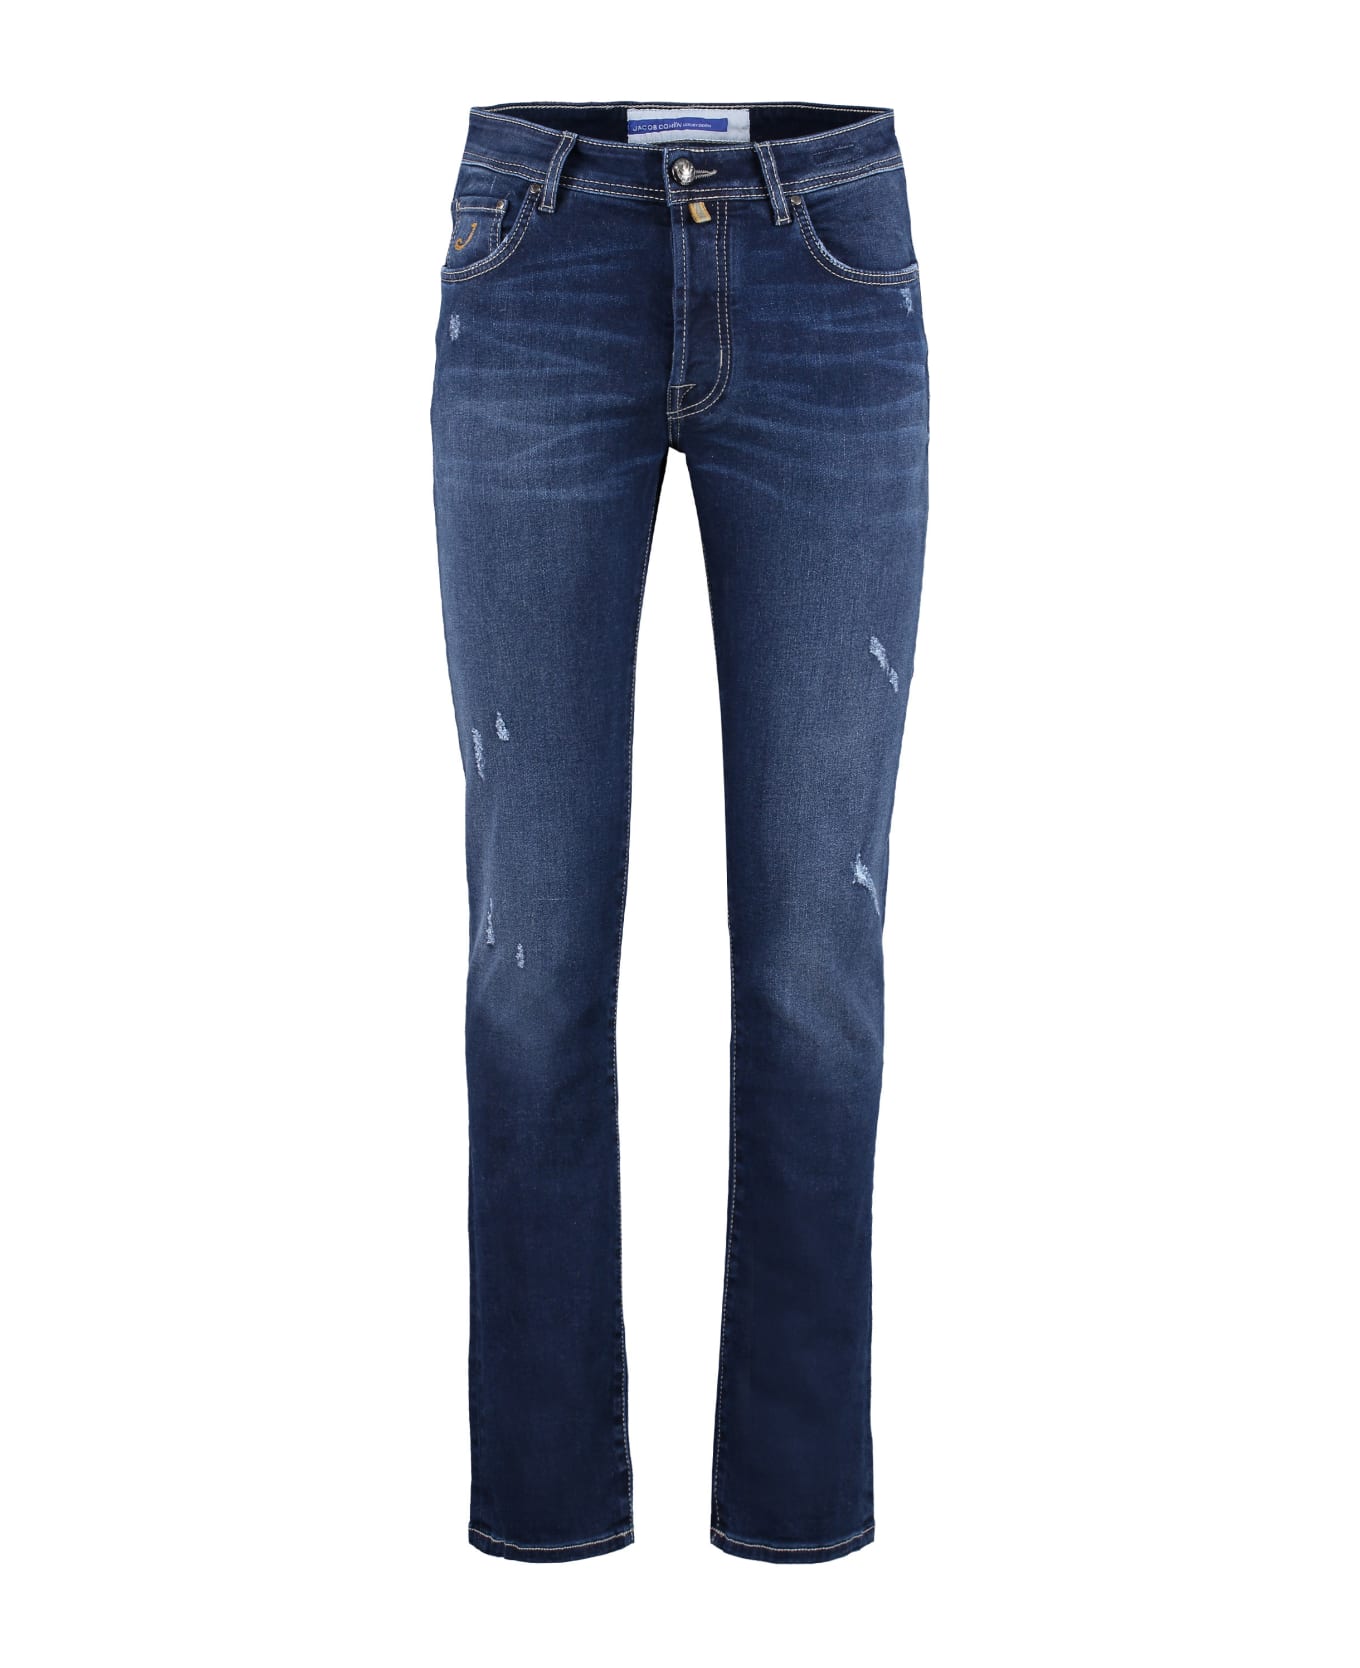 Jacob Cohen Bard Slim Fit Jeans - Denim